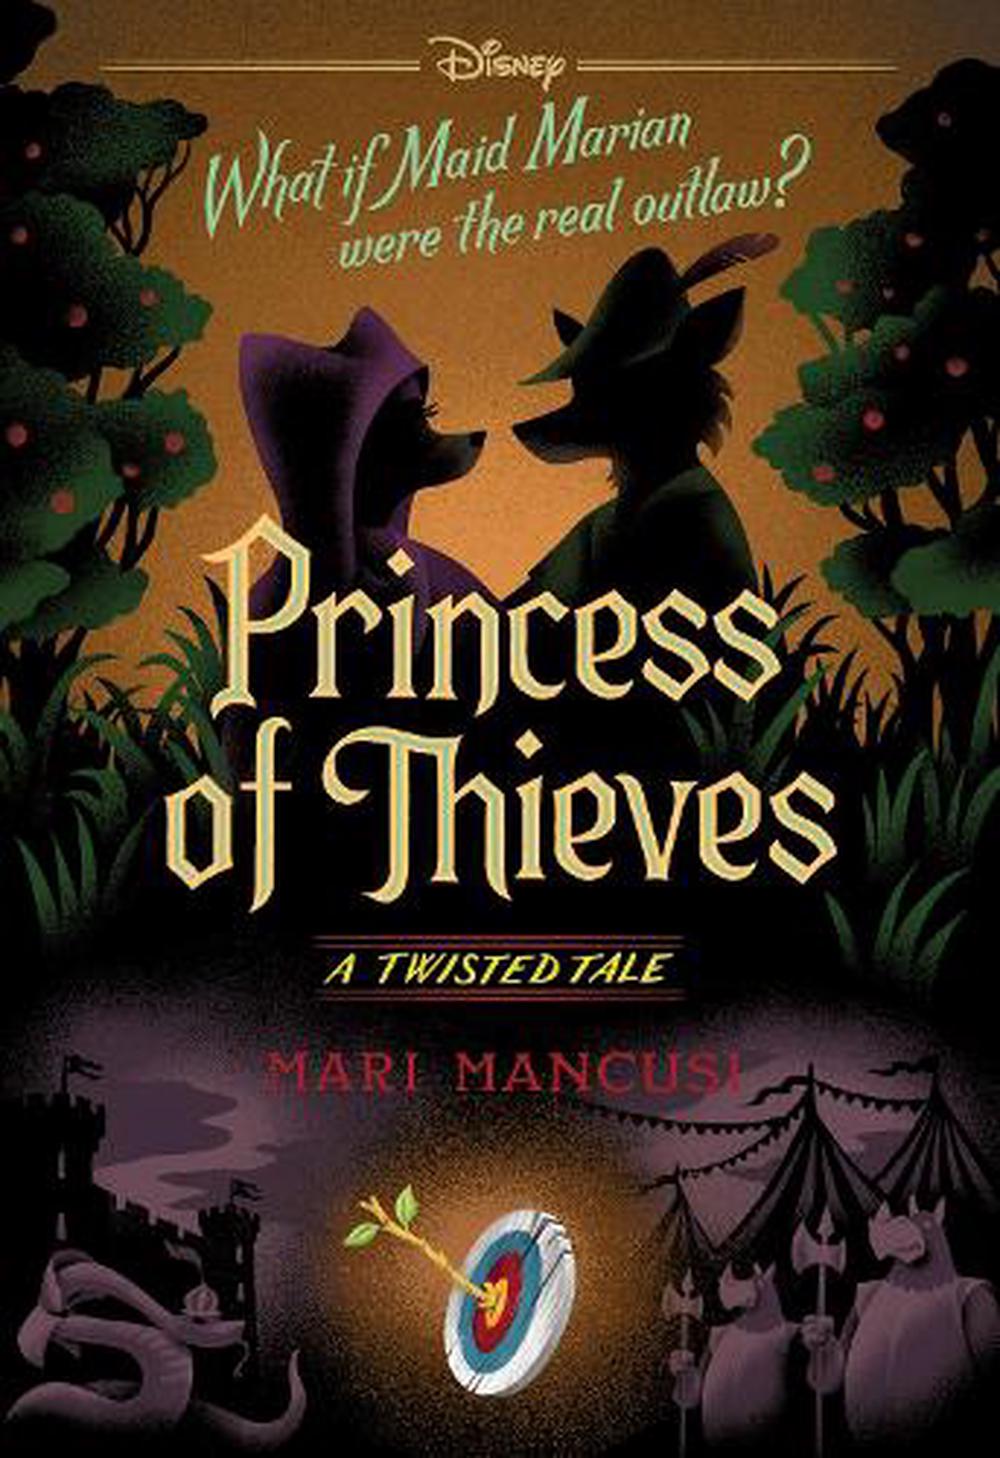 Princess of Thieves (Disney: A Twisted Tale #17) par Mari Mancusi livre de poche - Photo 1 sur 1